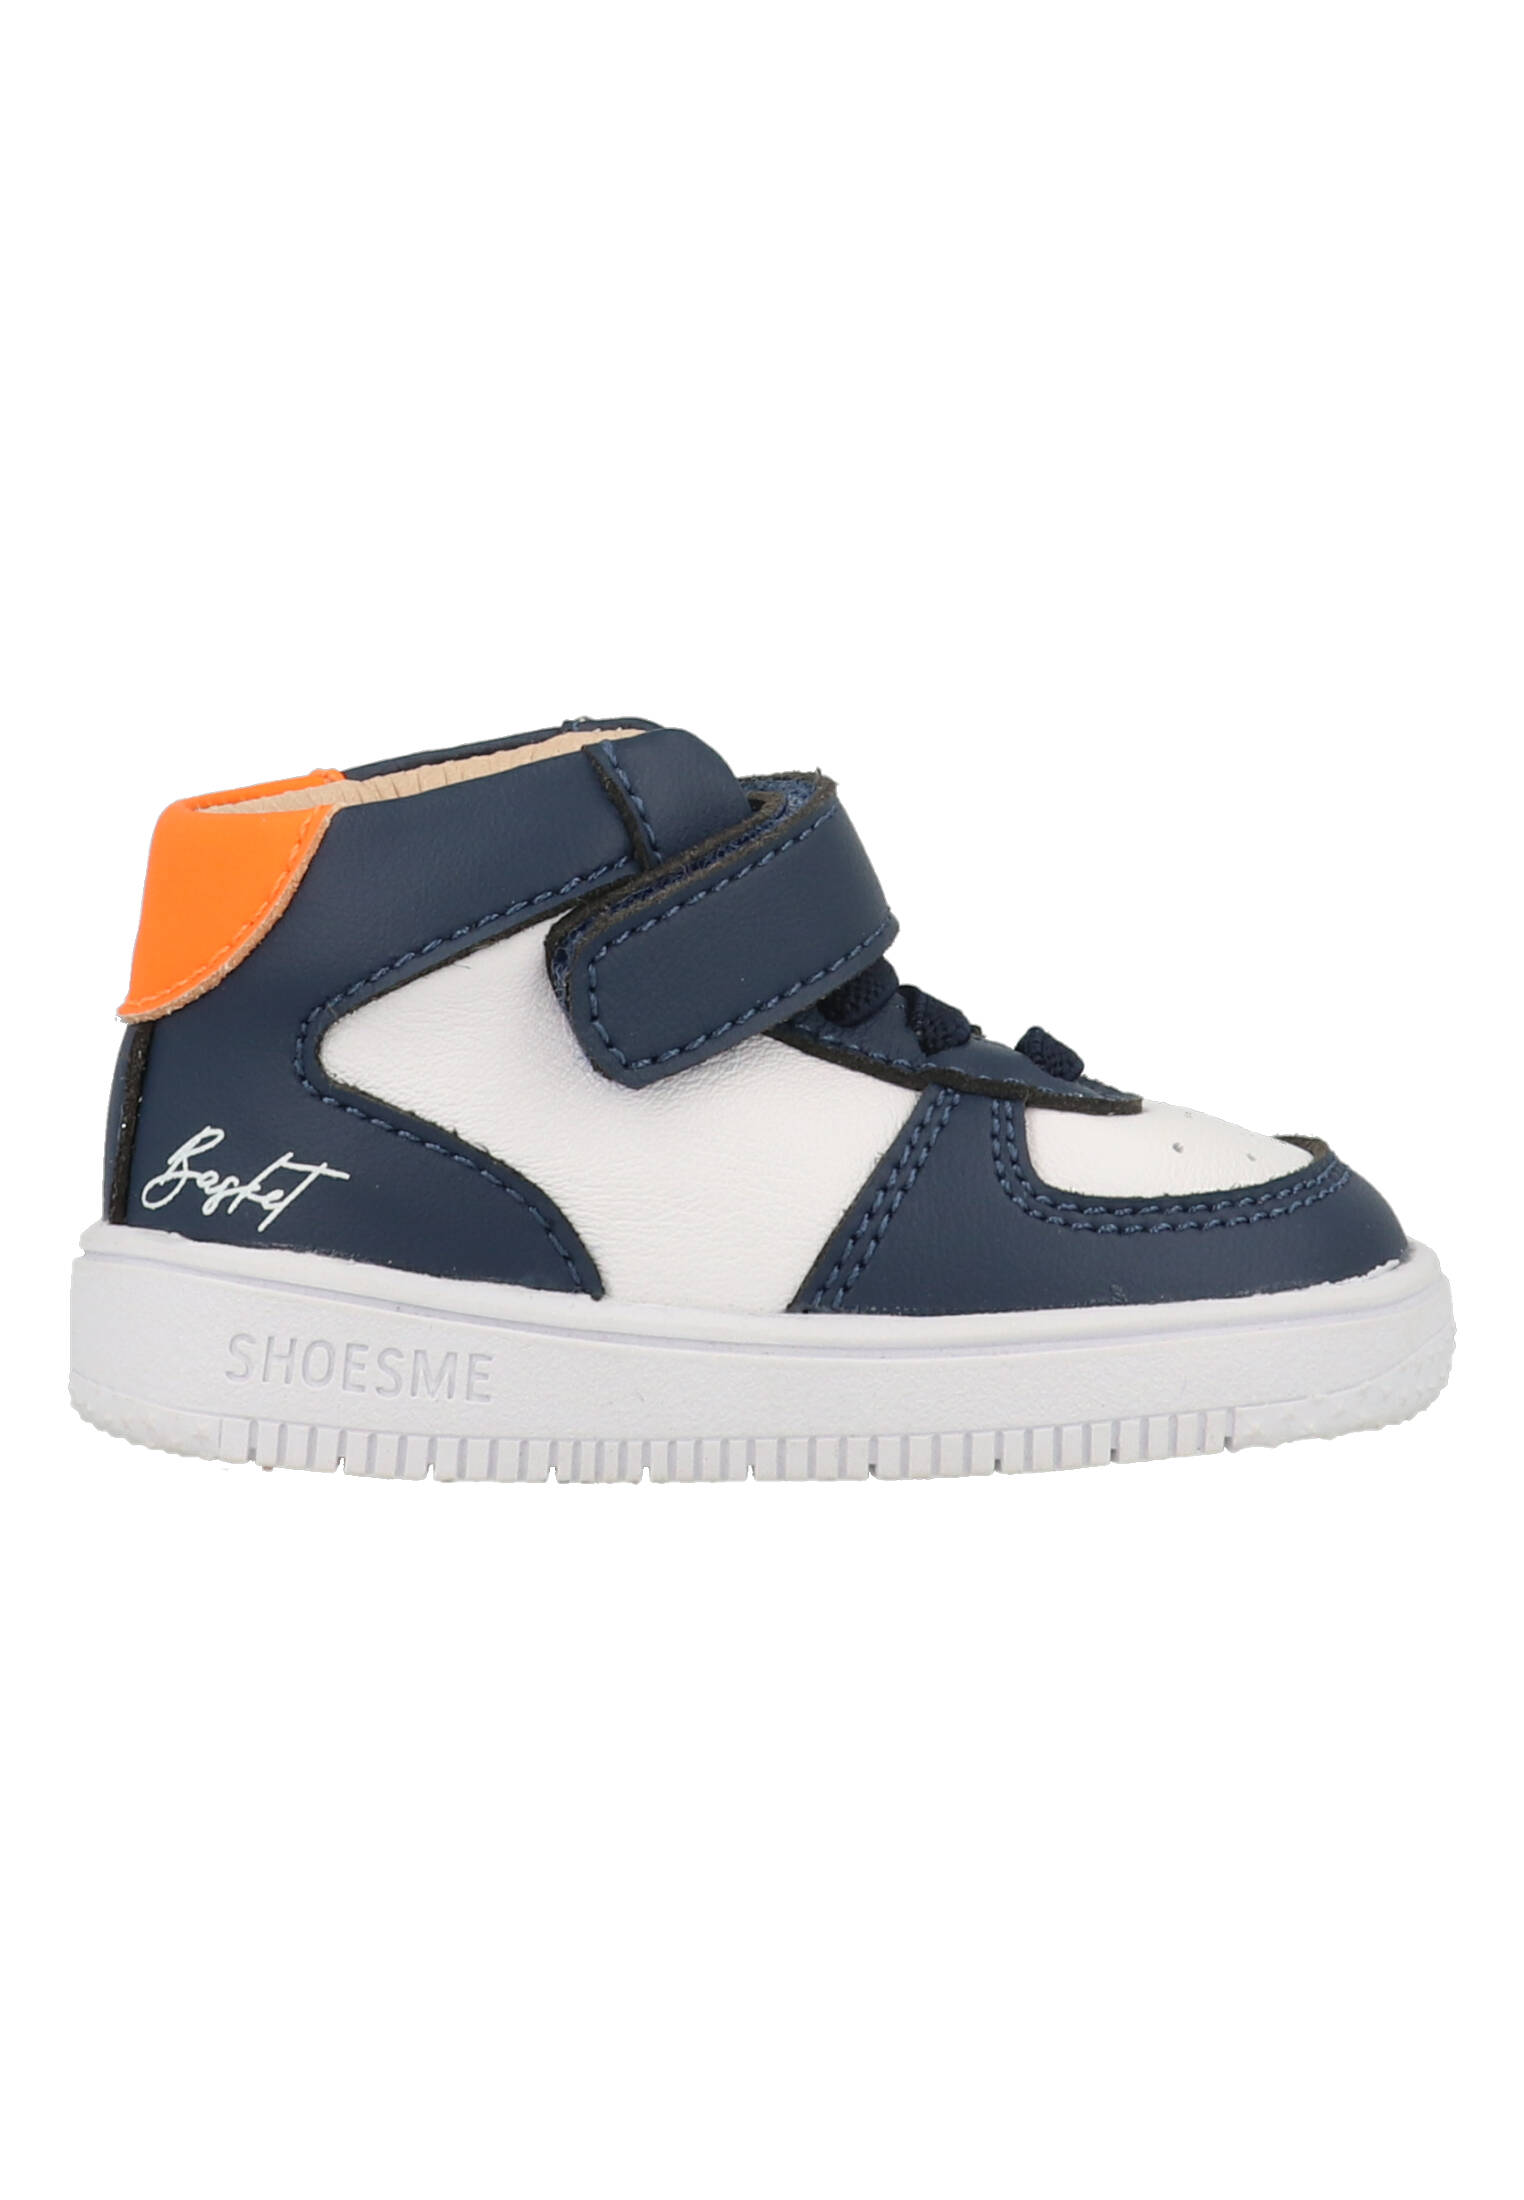 Shoesme baby sneaker - Blauw wit - Maat 21